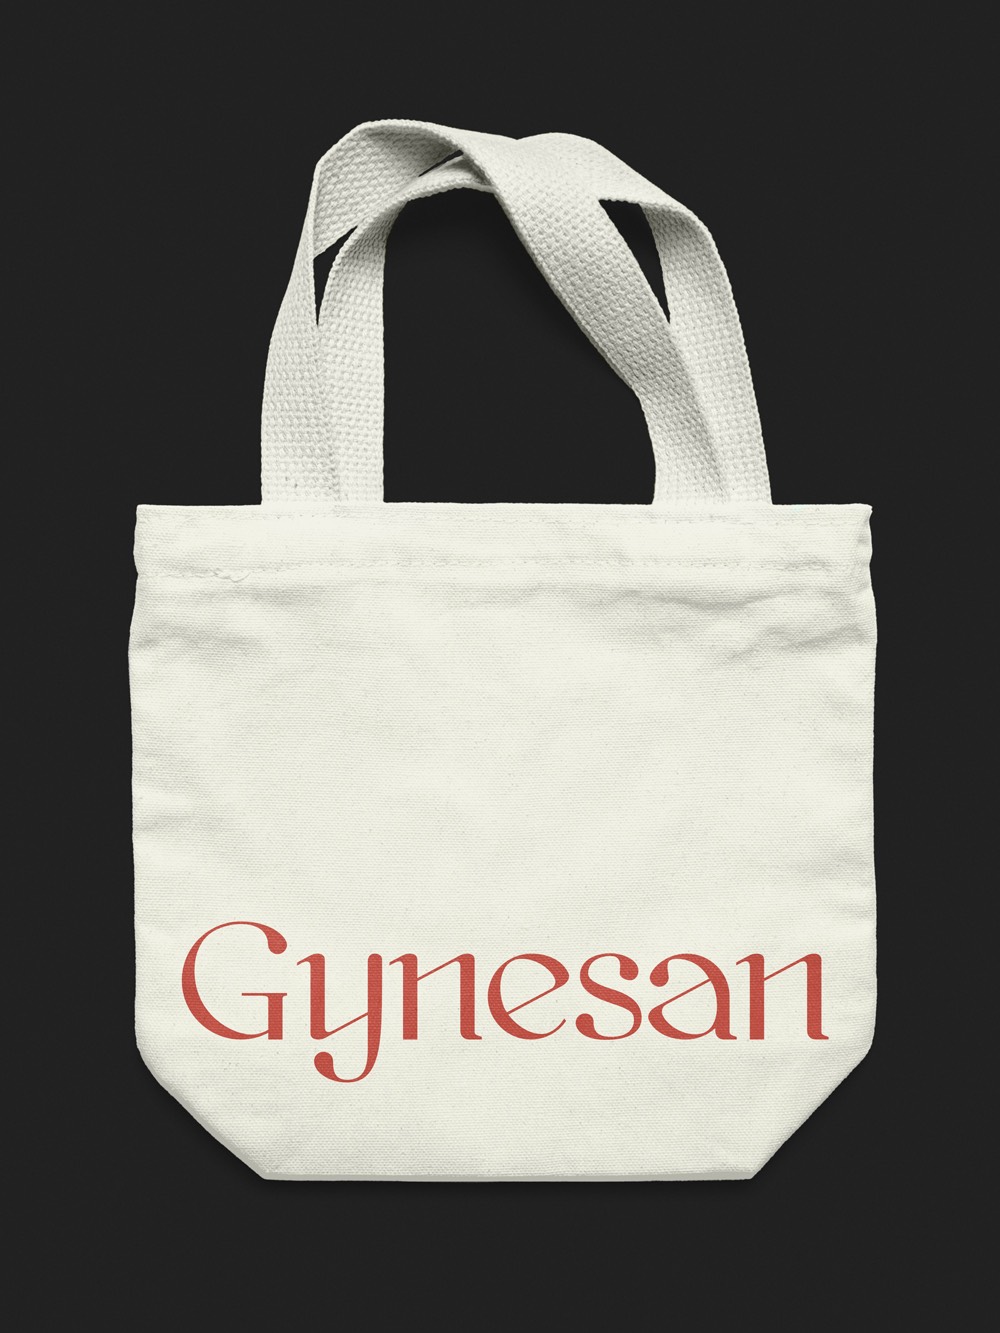 Diseño y desarrollo de identidad visual corporativa para Gynesan. Diseño de tote-bag.